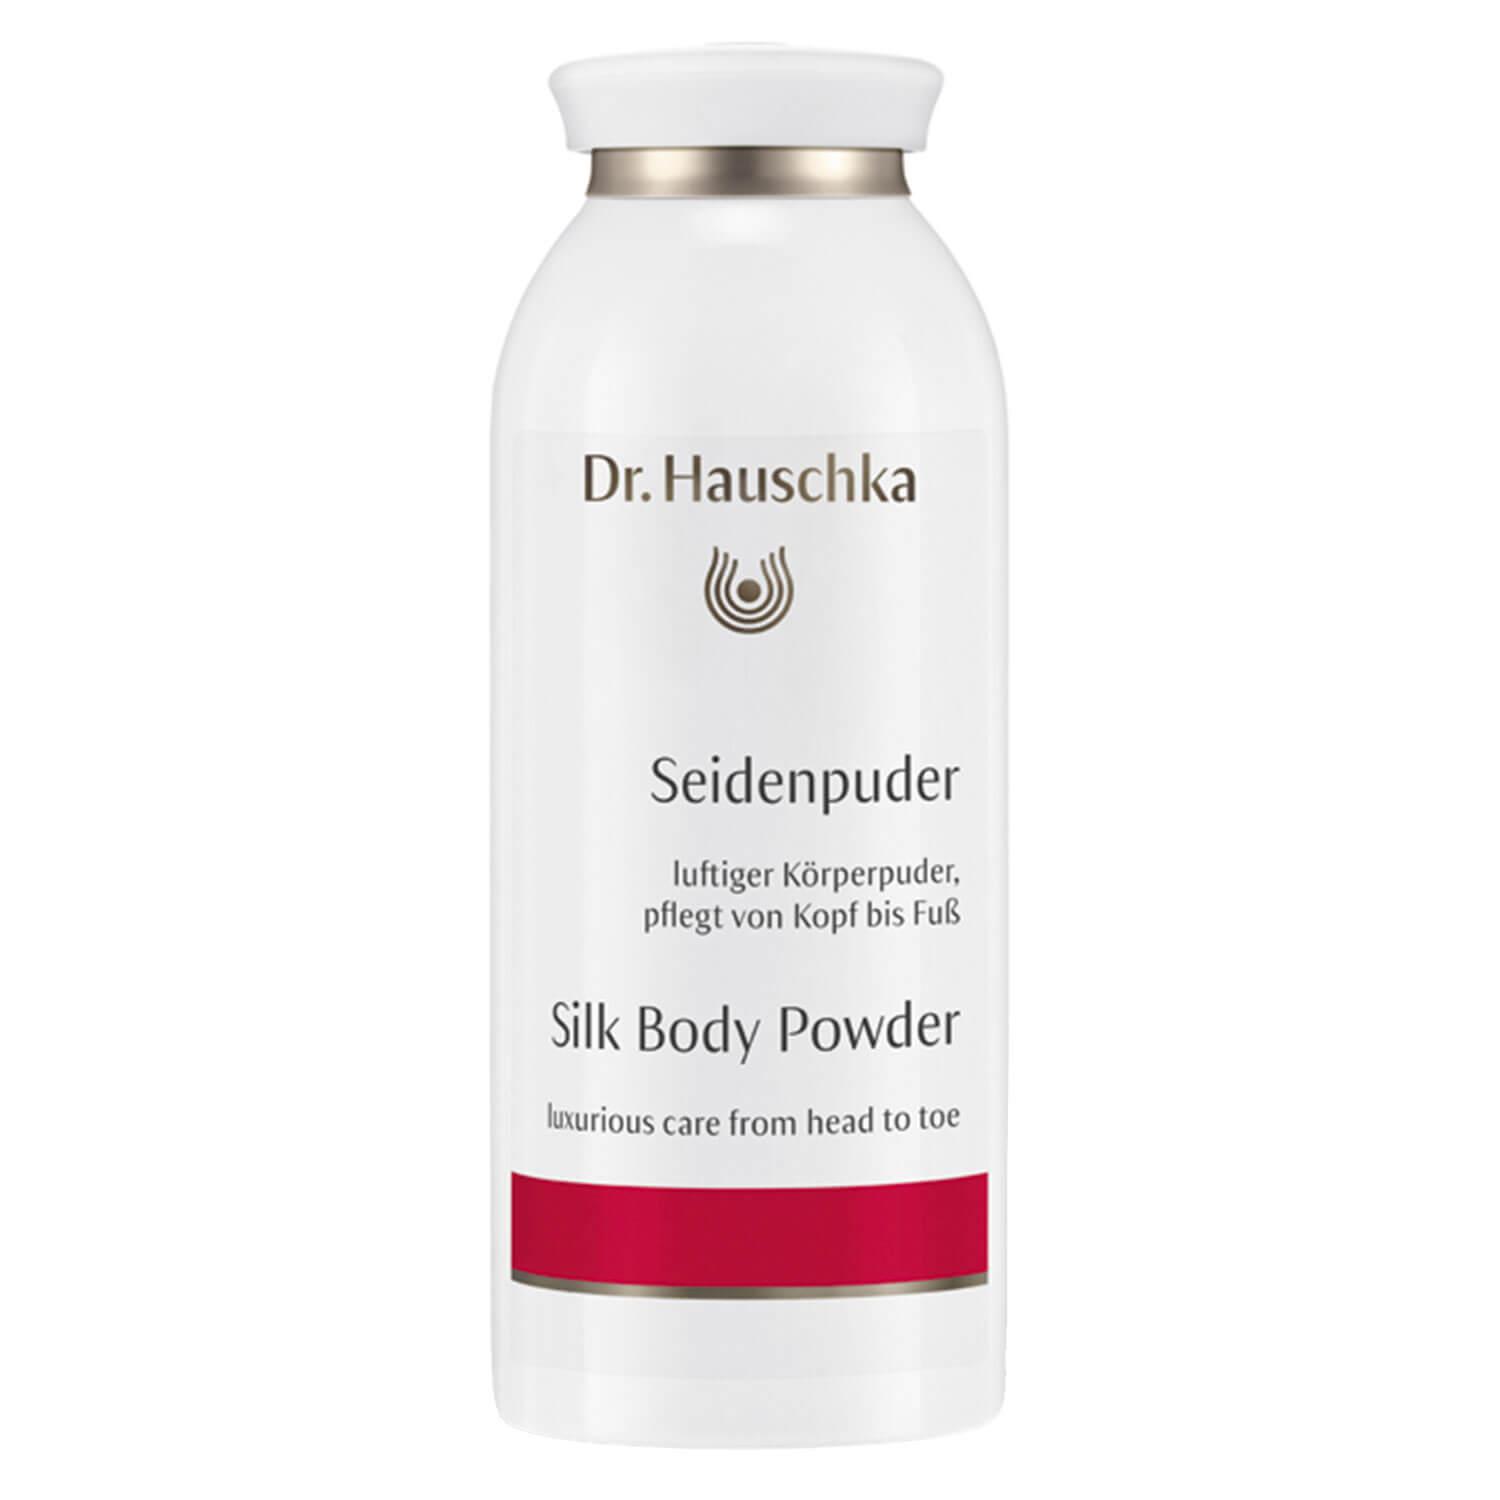 Dr. Hauschka - Silk Body Powder